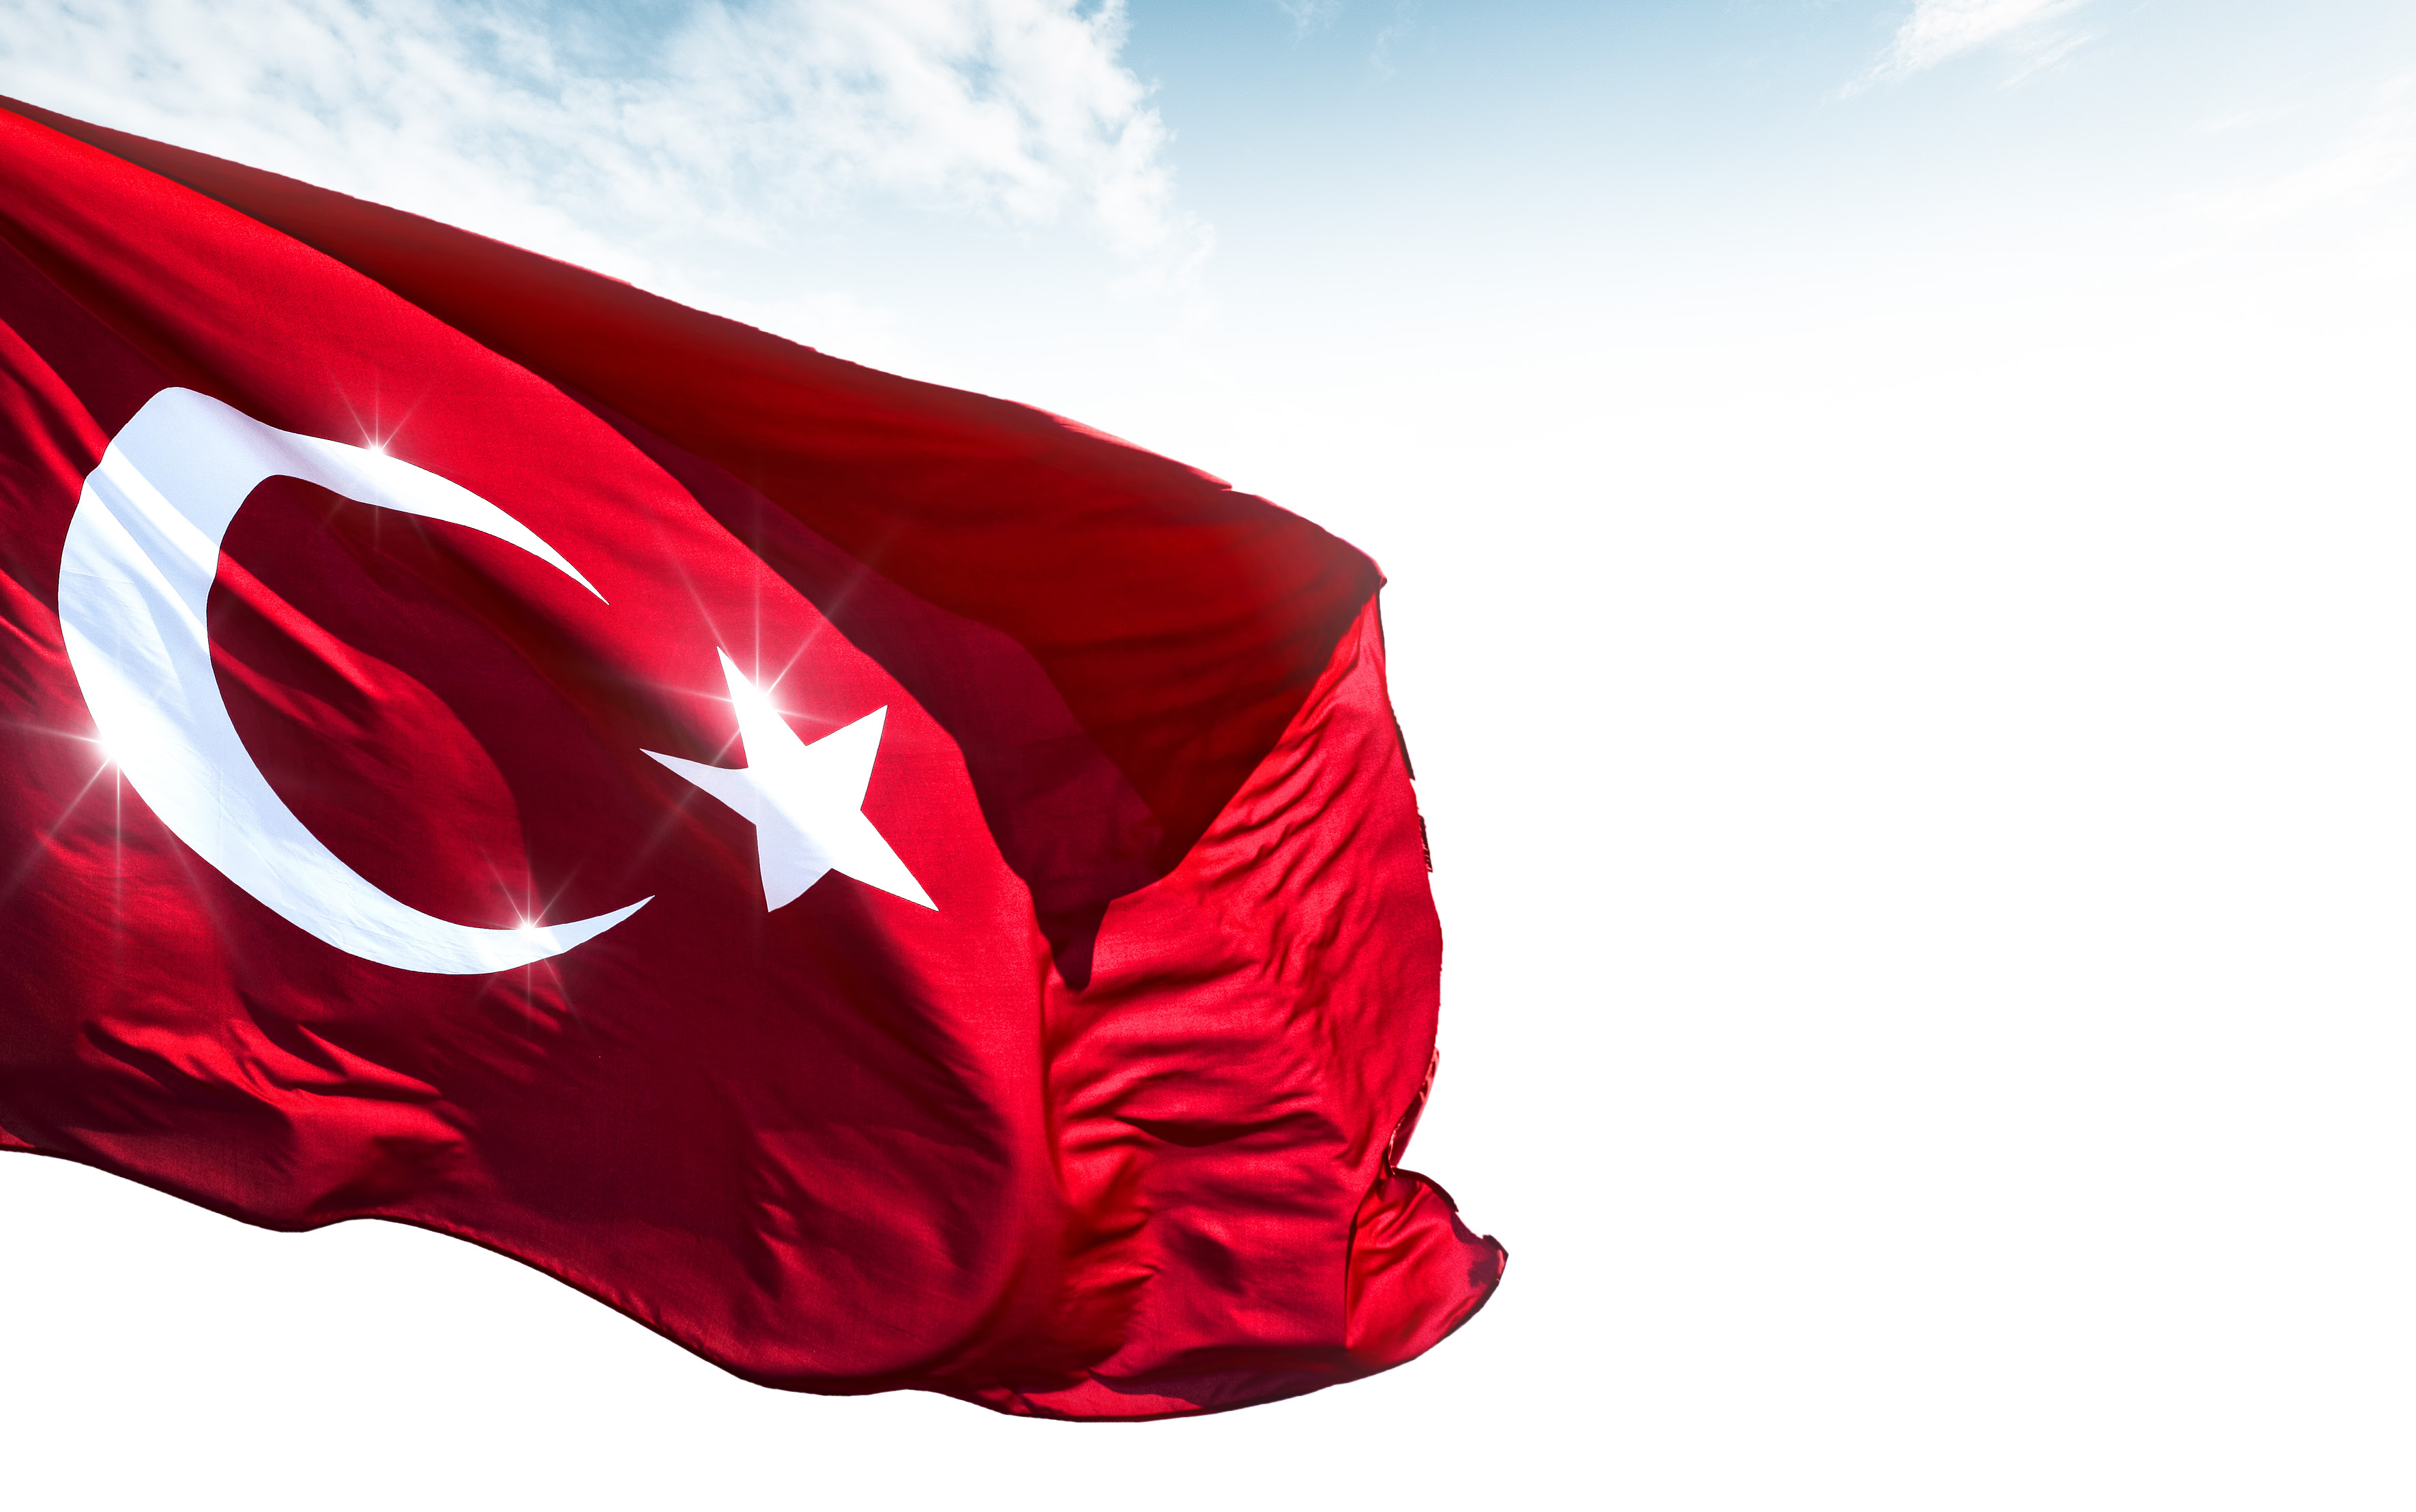 YERLi VE MiLLi BiR SiSTEM Türkiye, artık daha büyük. Dünyada söz söyleyen ülkeler arasında. Milletinin refahını artırmaya başladı. Dünyanın en büyük altyapı yatırımlarını yapıyor.